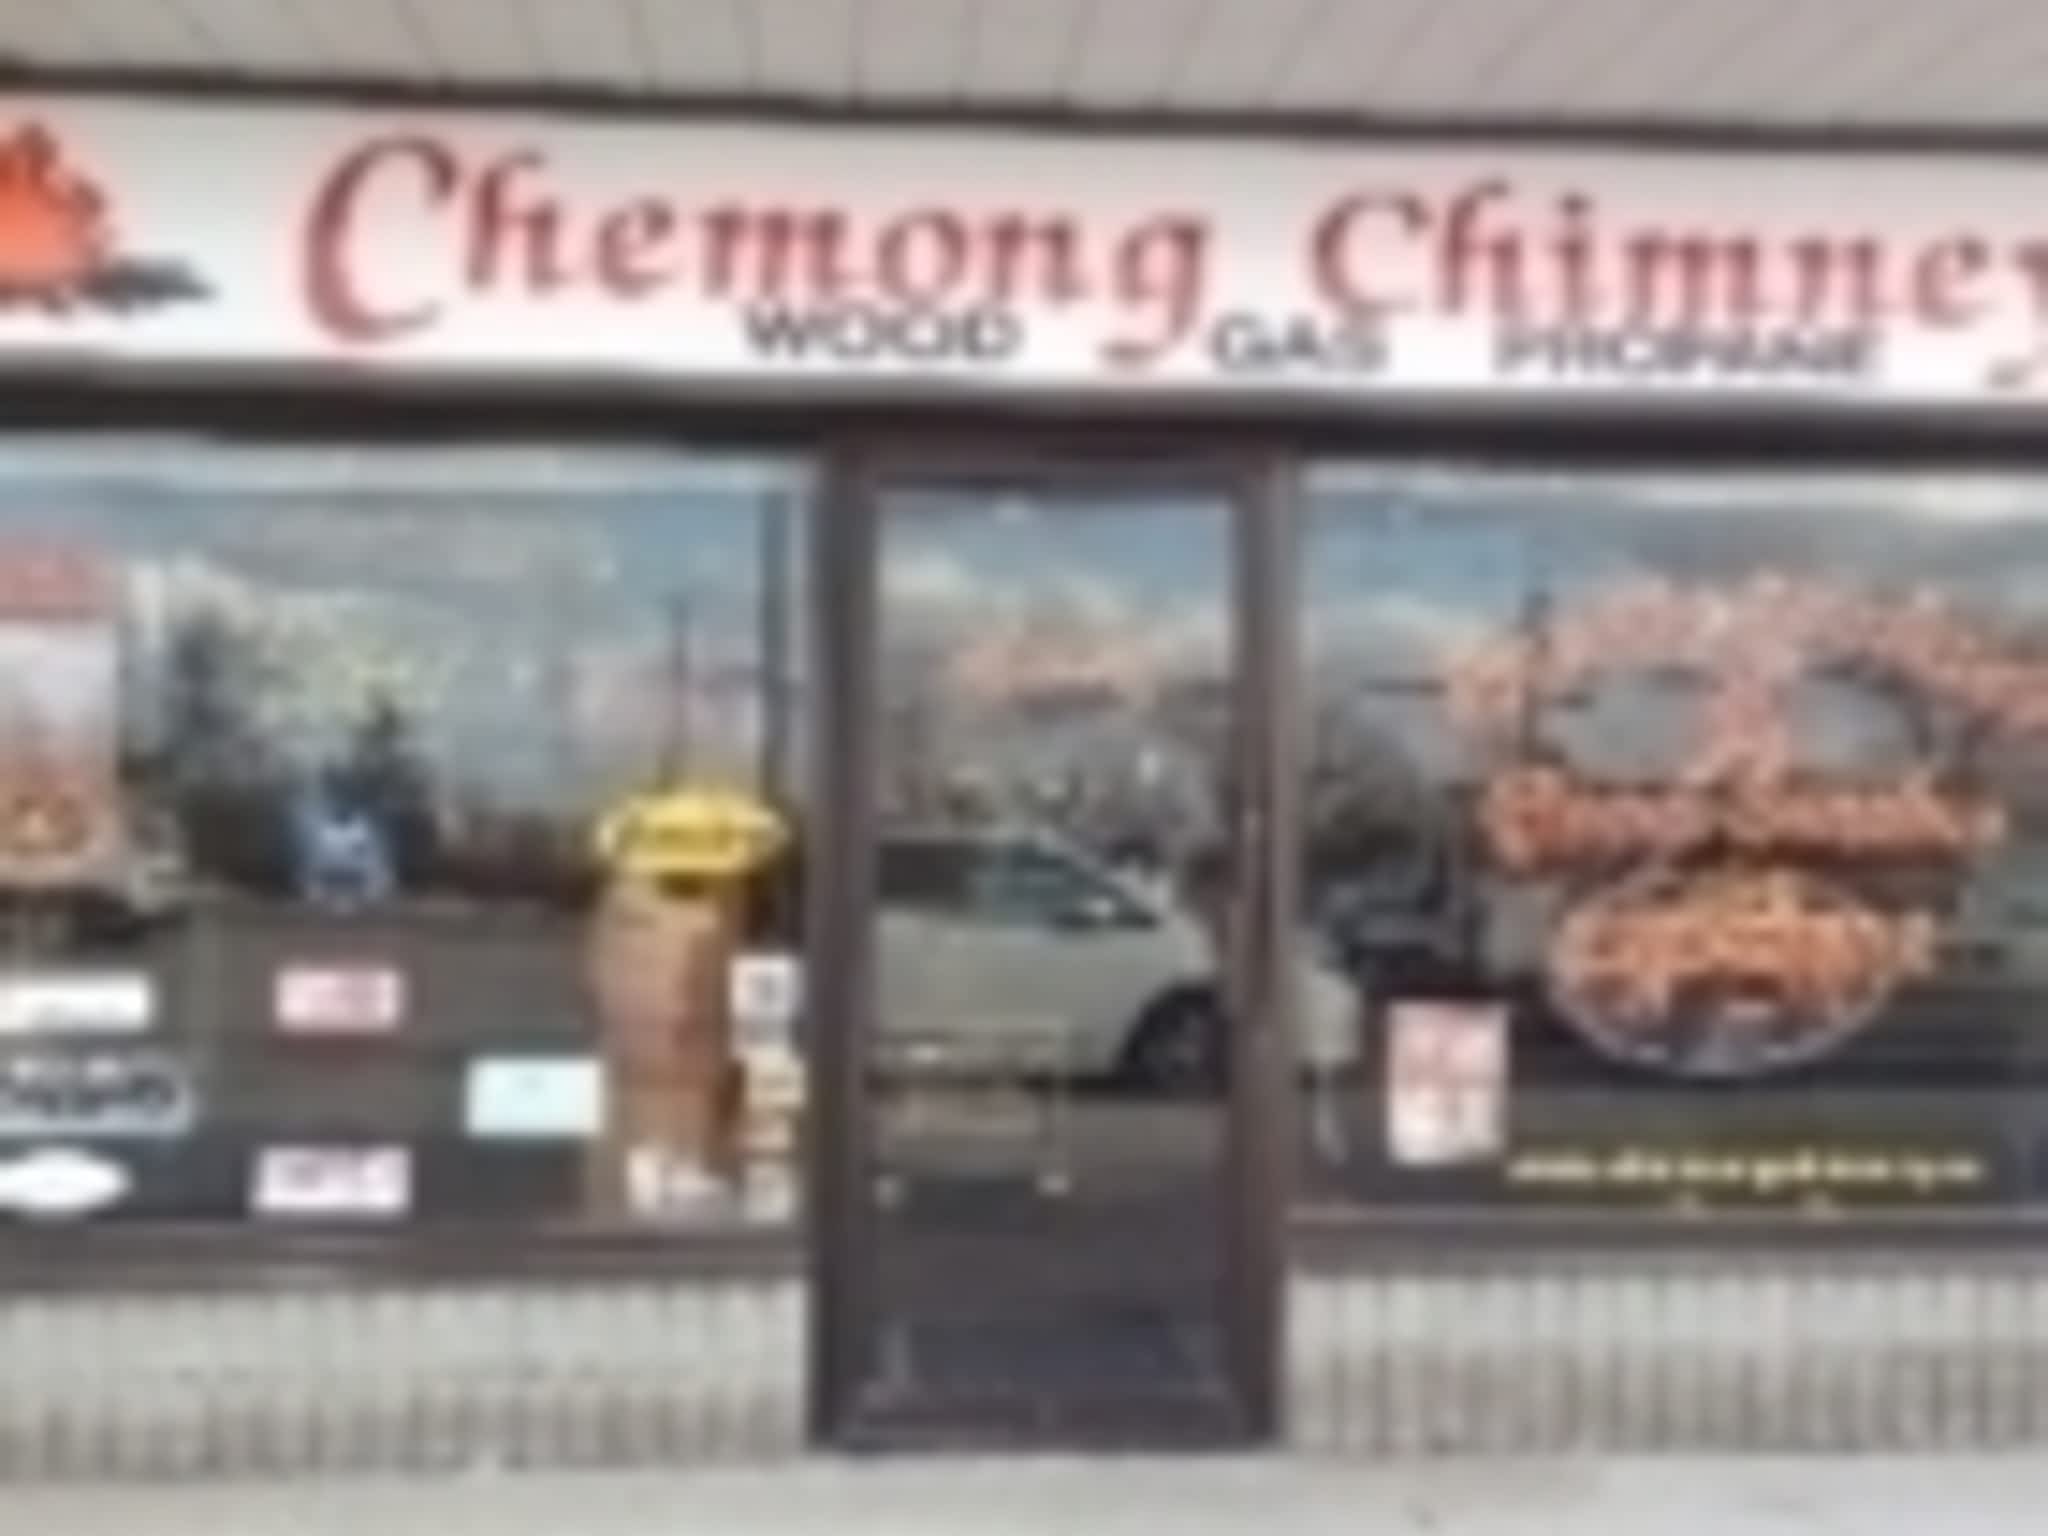 photo Chemong Chimney Ltd